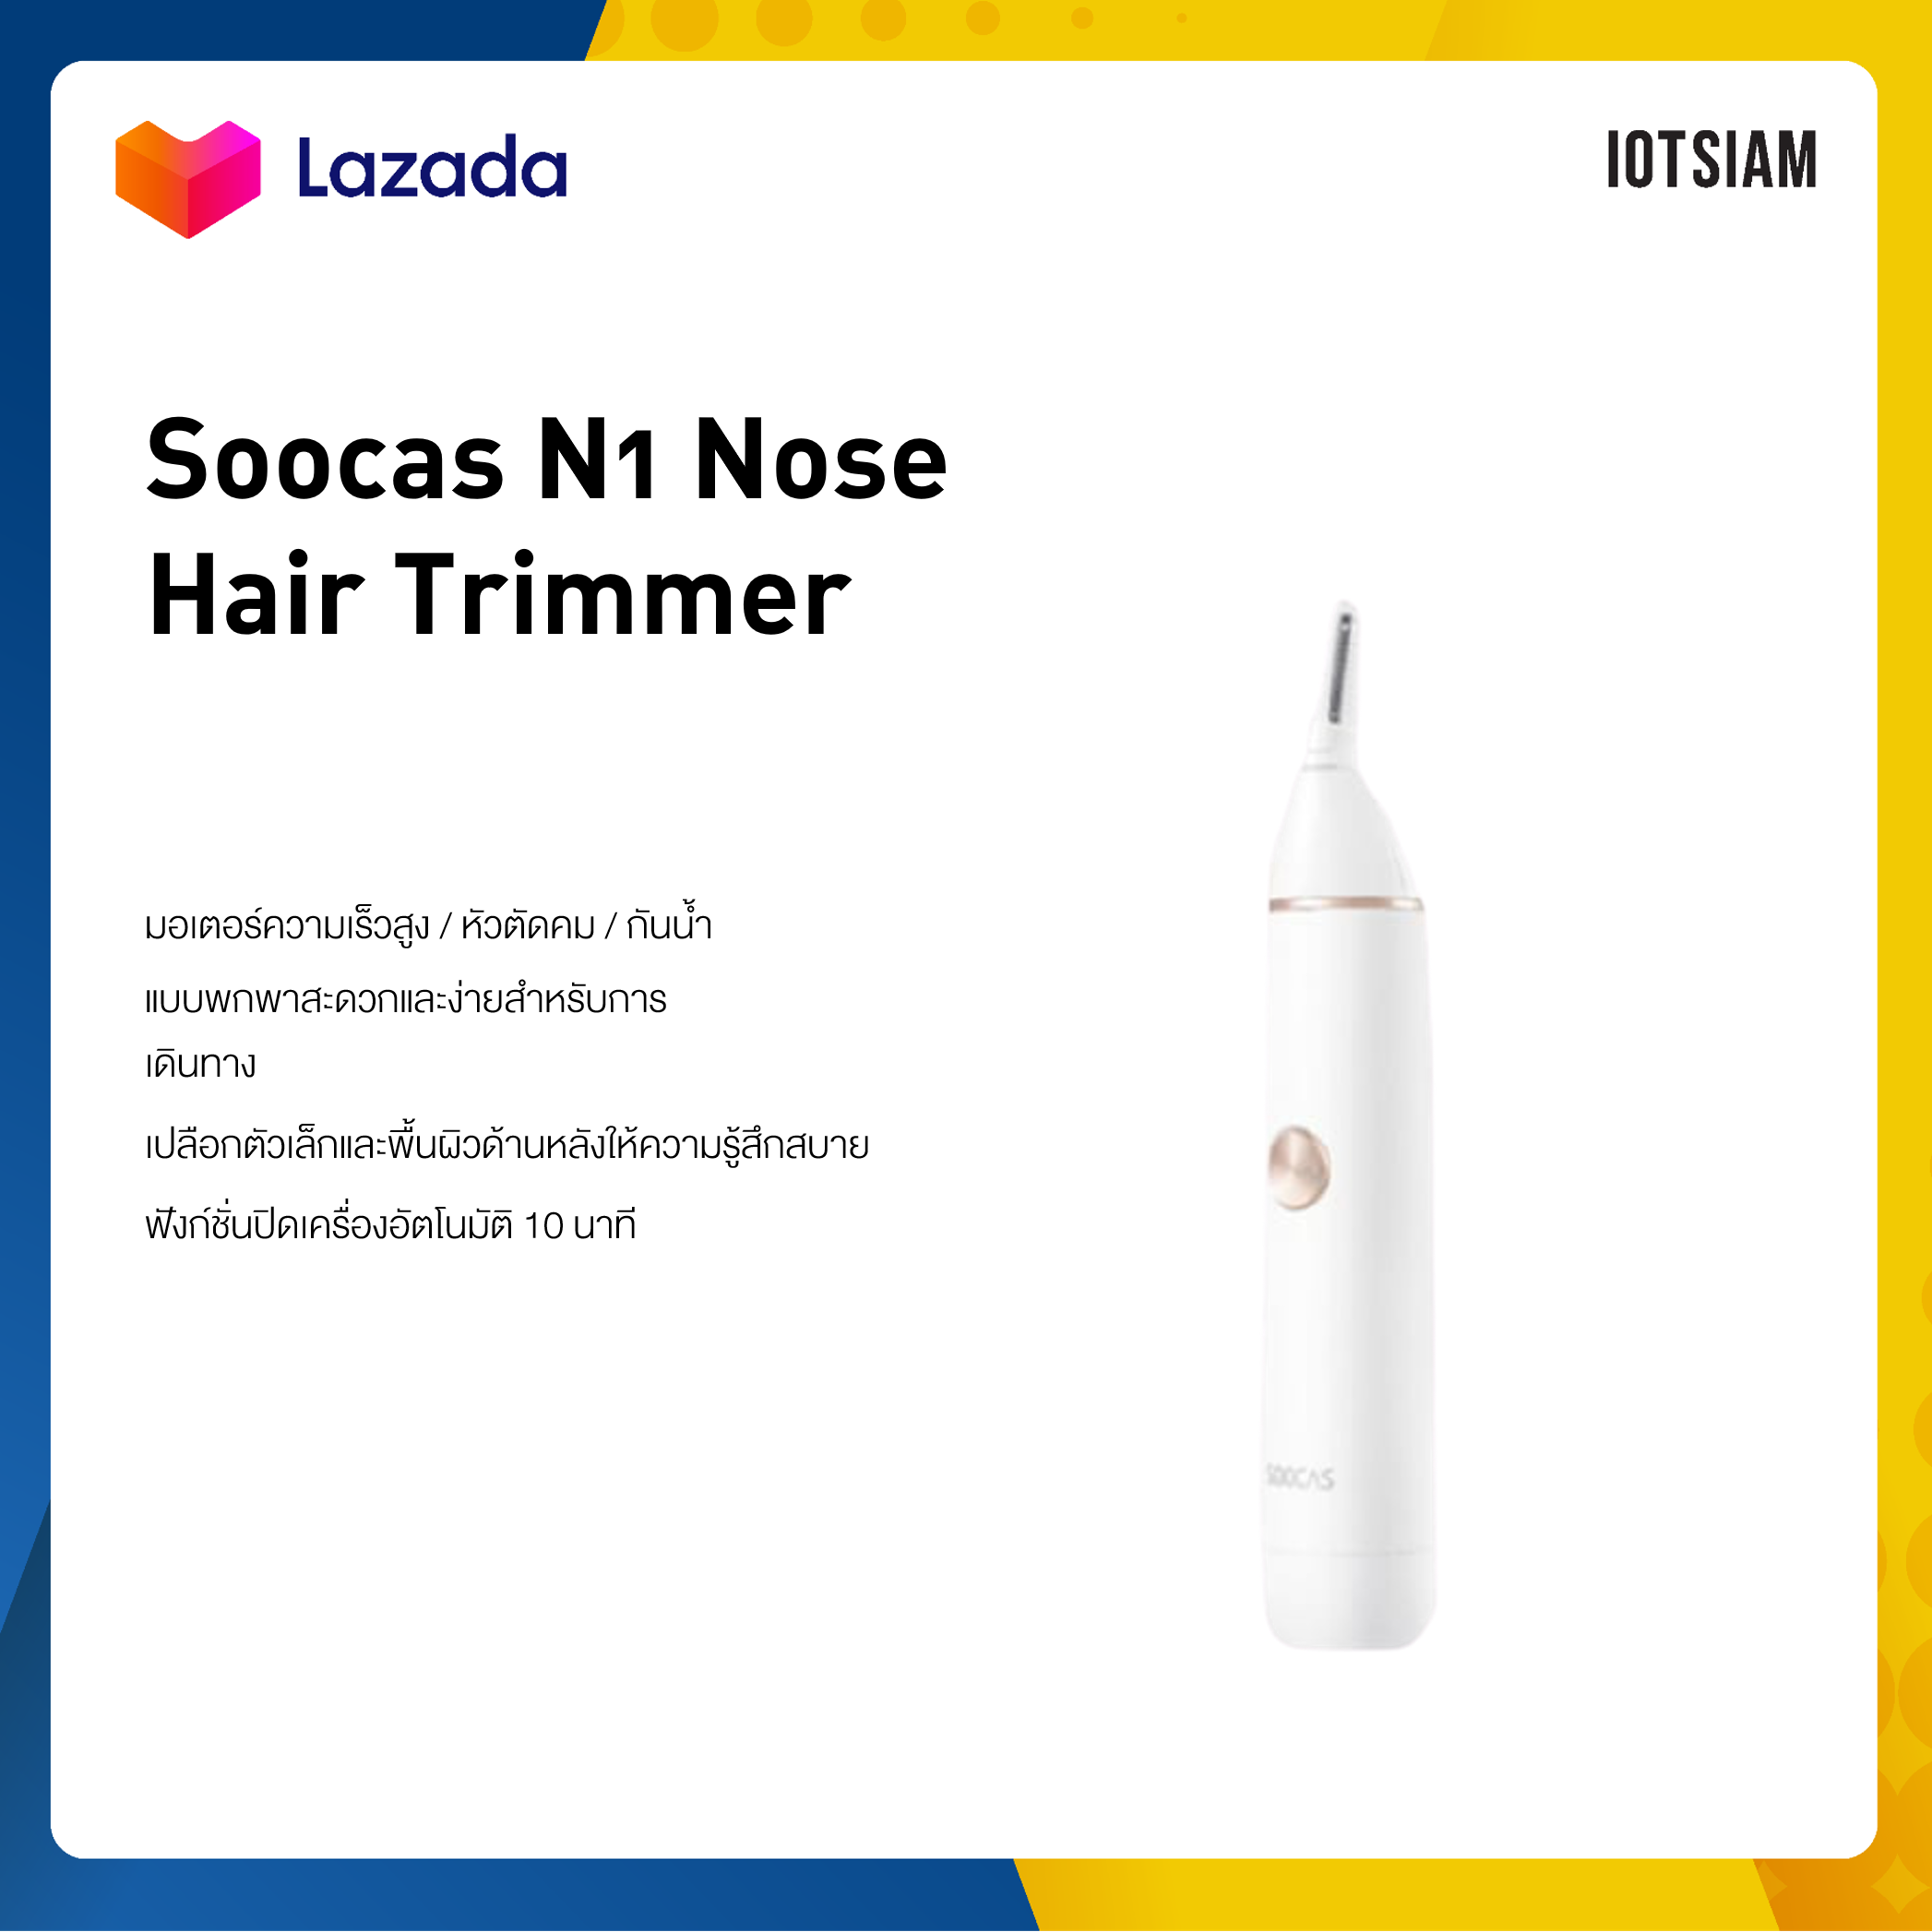 Soocas N1 Nose Hair Trimmer